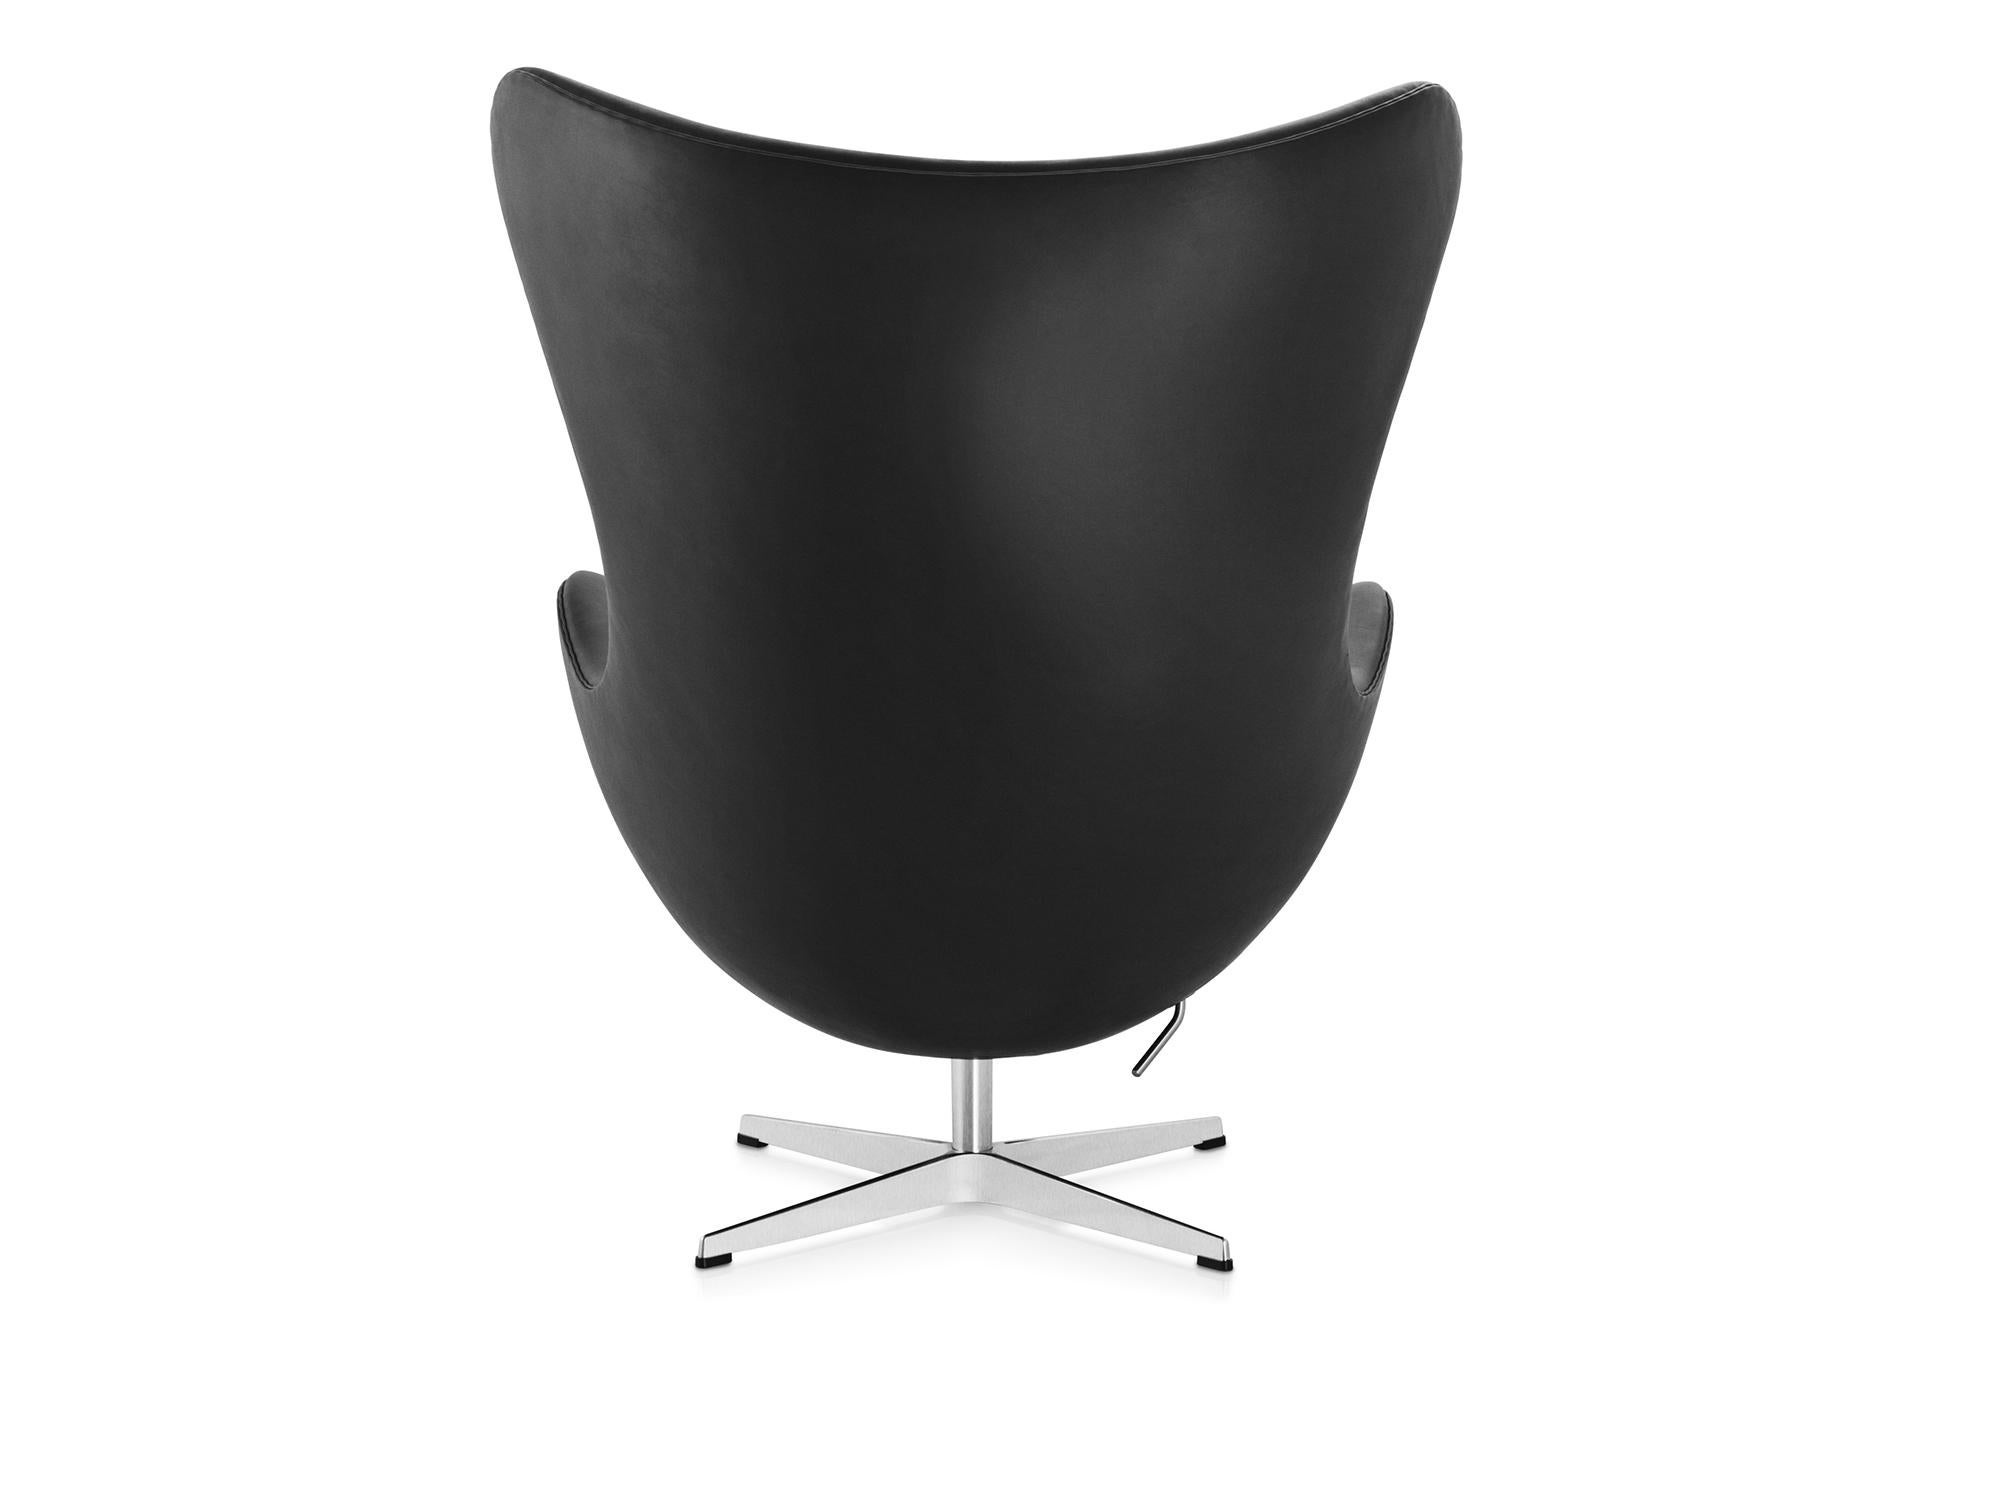 Arne Jacobsen 'Egg' Chair for Fritz Hansen in Leather Upholstery (Cat. 5) For Sale 5